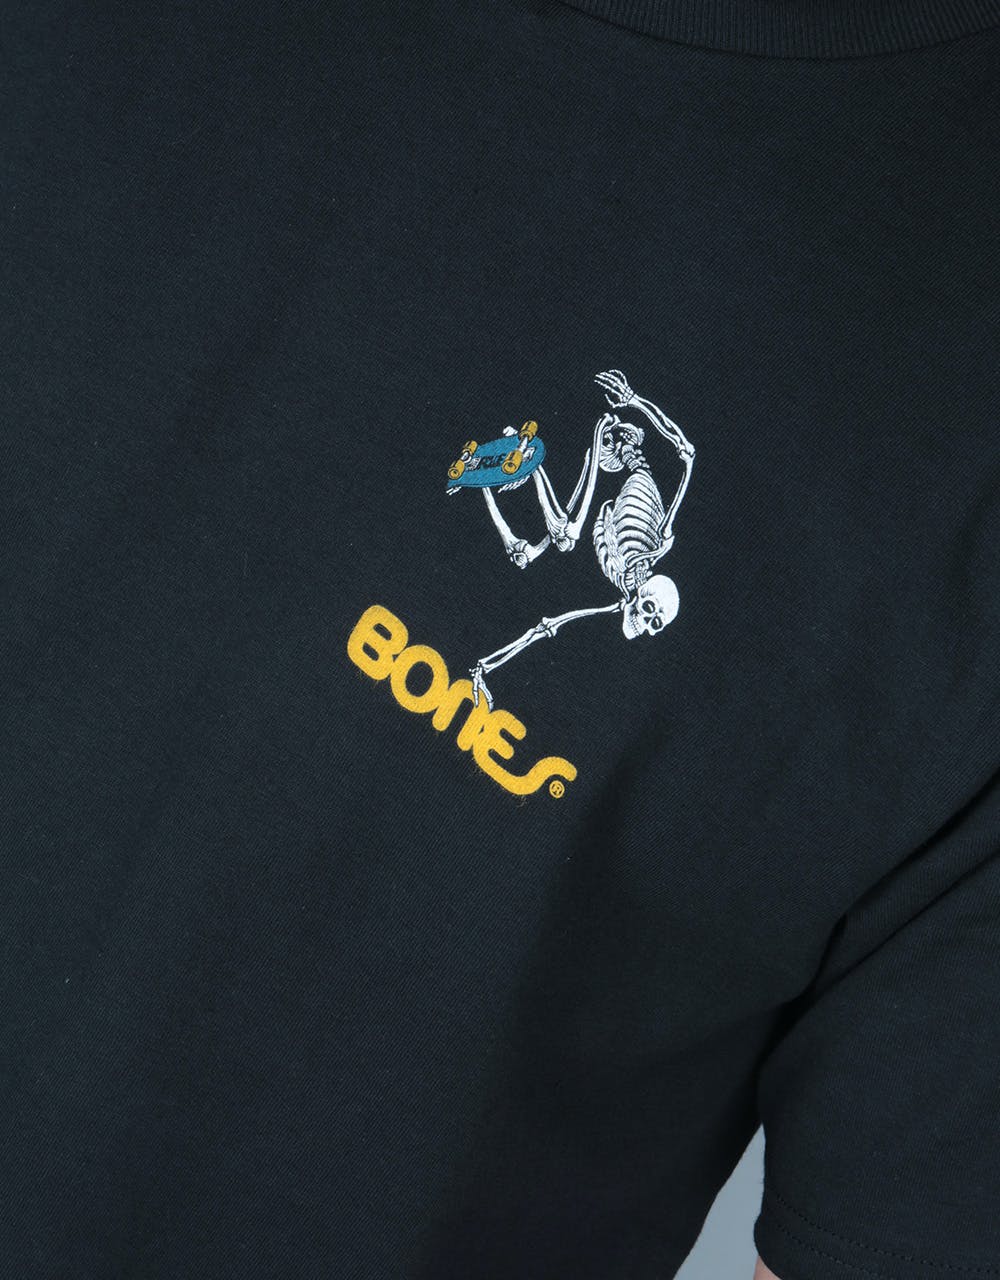 Powell Peralta Skateboard Skeleton T-Shirt - Black